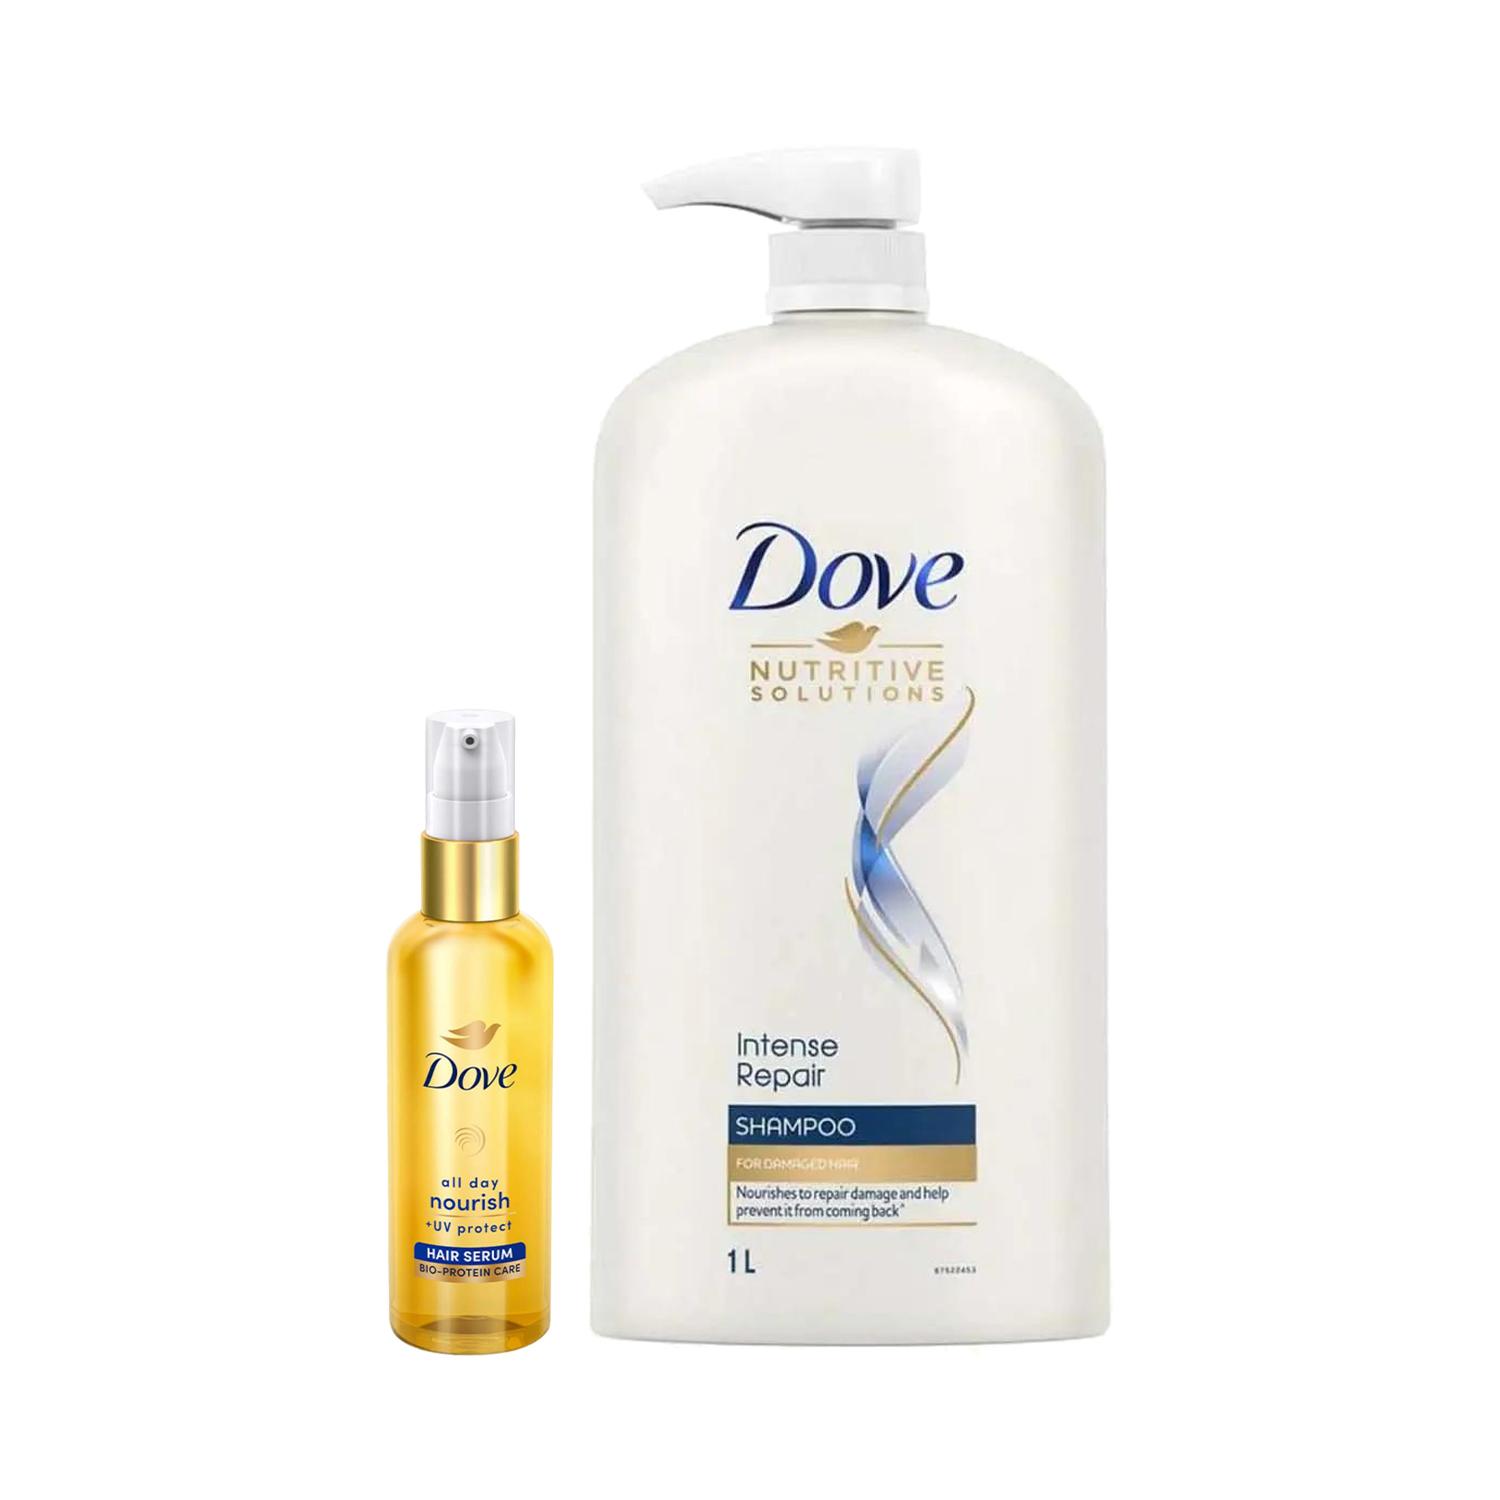 Dove | Dove Intense Repair Shampoo (1000 ml) & All Day Nourish+ UV Protect Hair Serum (48 ml) Combo